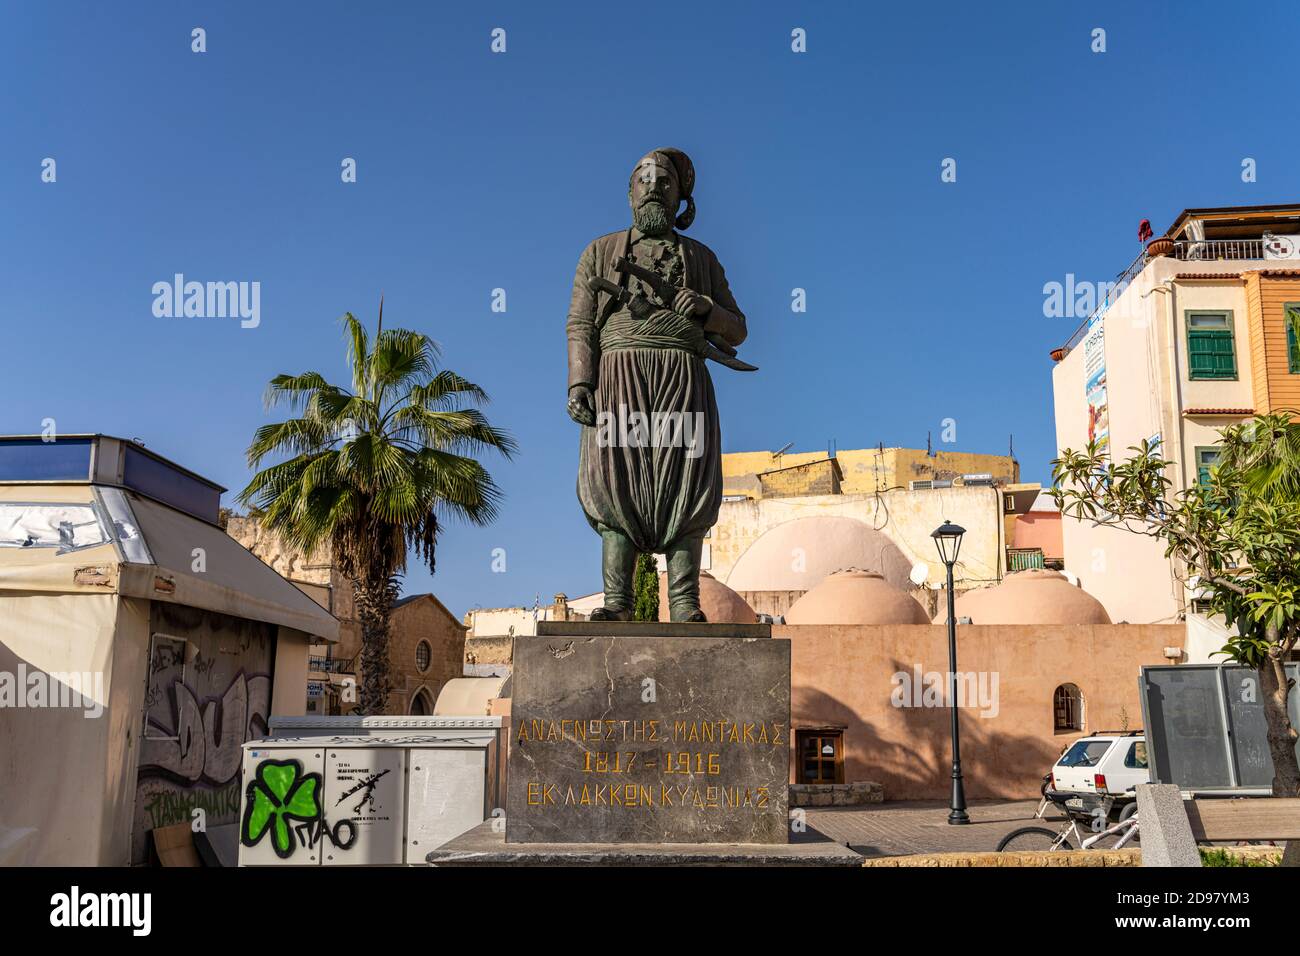 Statue de von Anagonostis Mantakas Chania, Kreta, Griechenland, Europa | Statue d'Anagonostis Mantakas, Chania, Crète, Grèce, Europe Banque D'Images